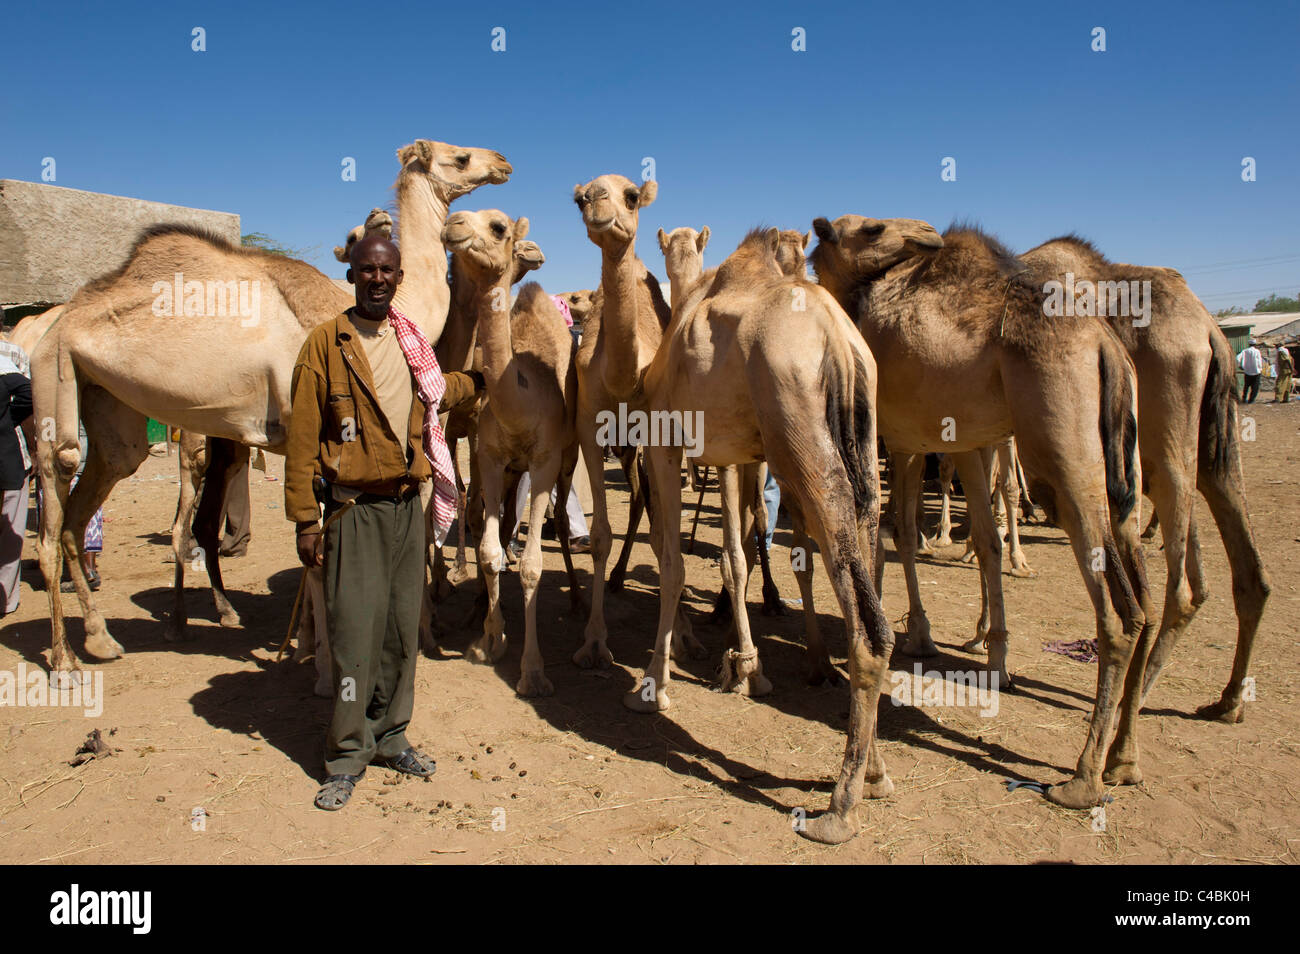 Camel and goat market, Hargeisa, Somaliland, Somalia Stock Photo